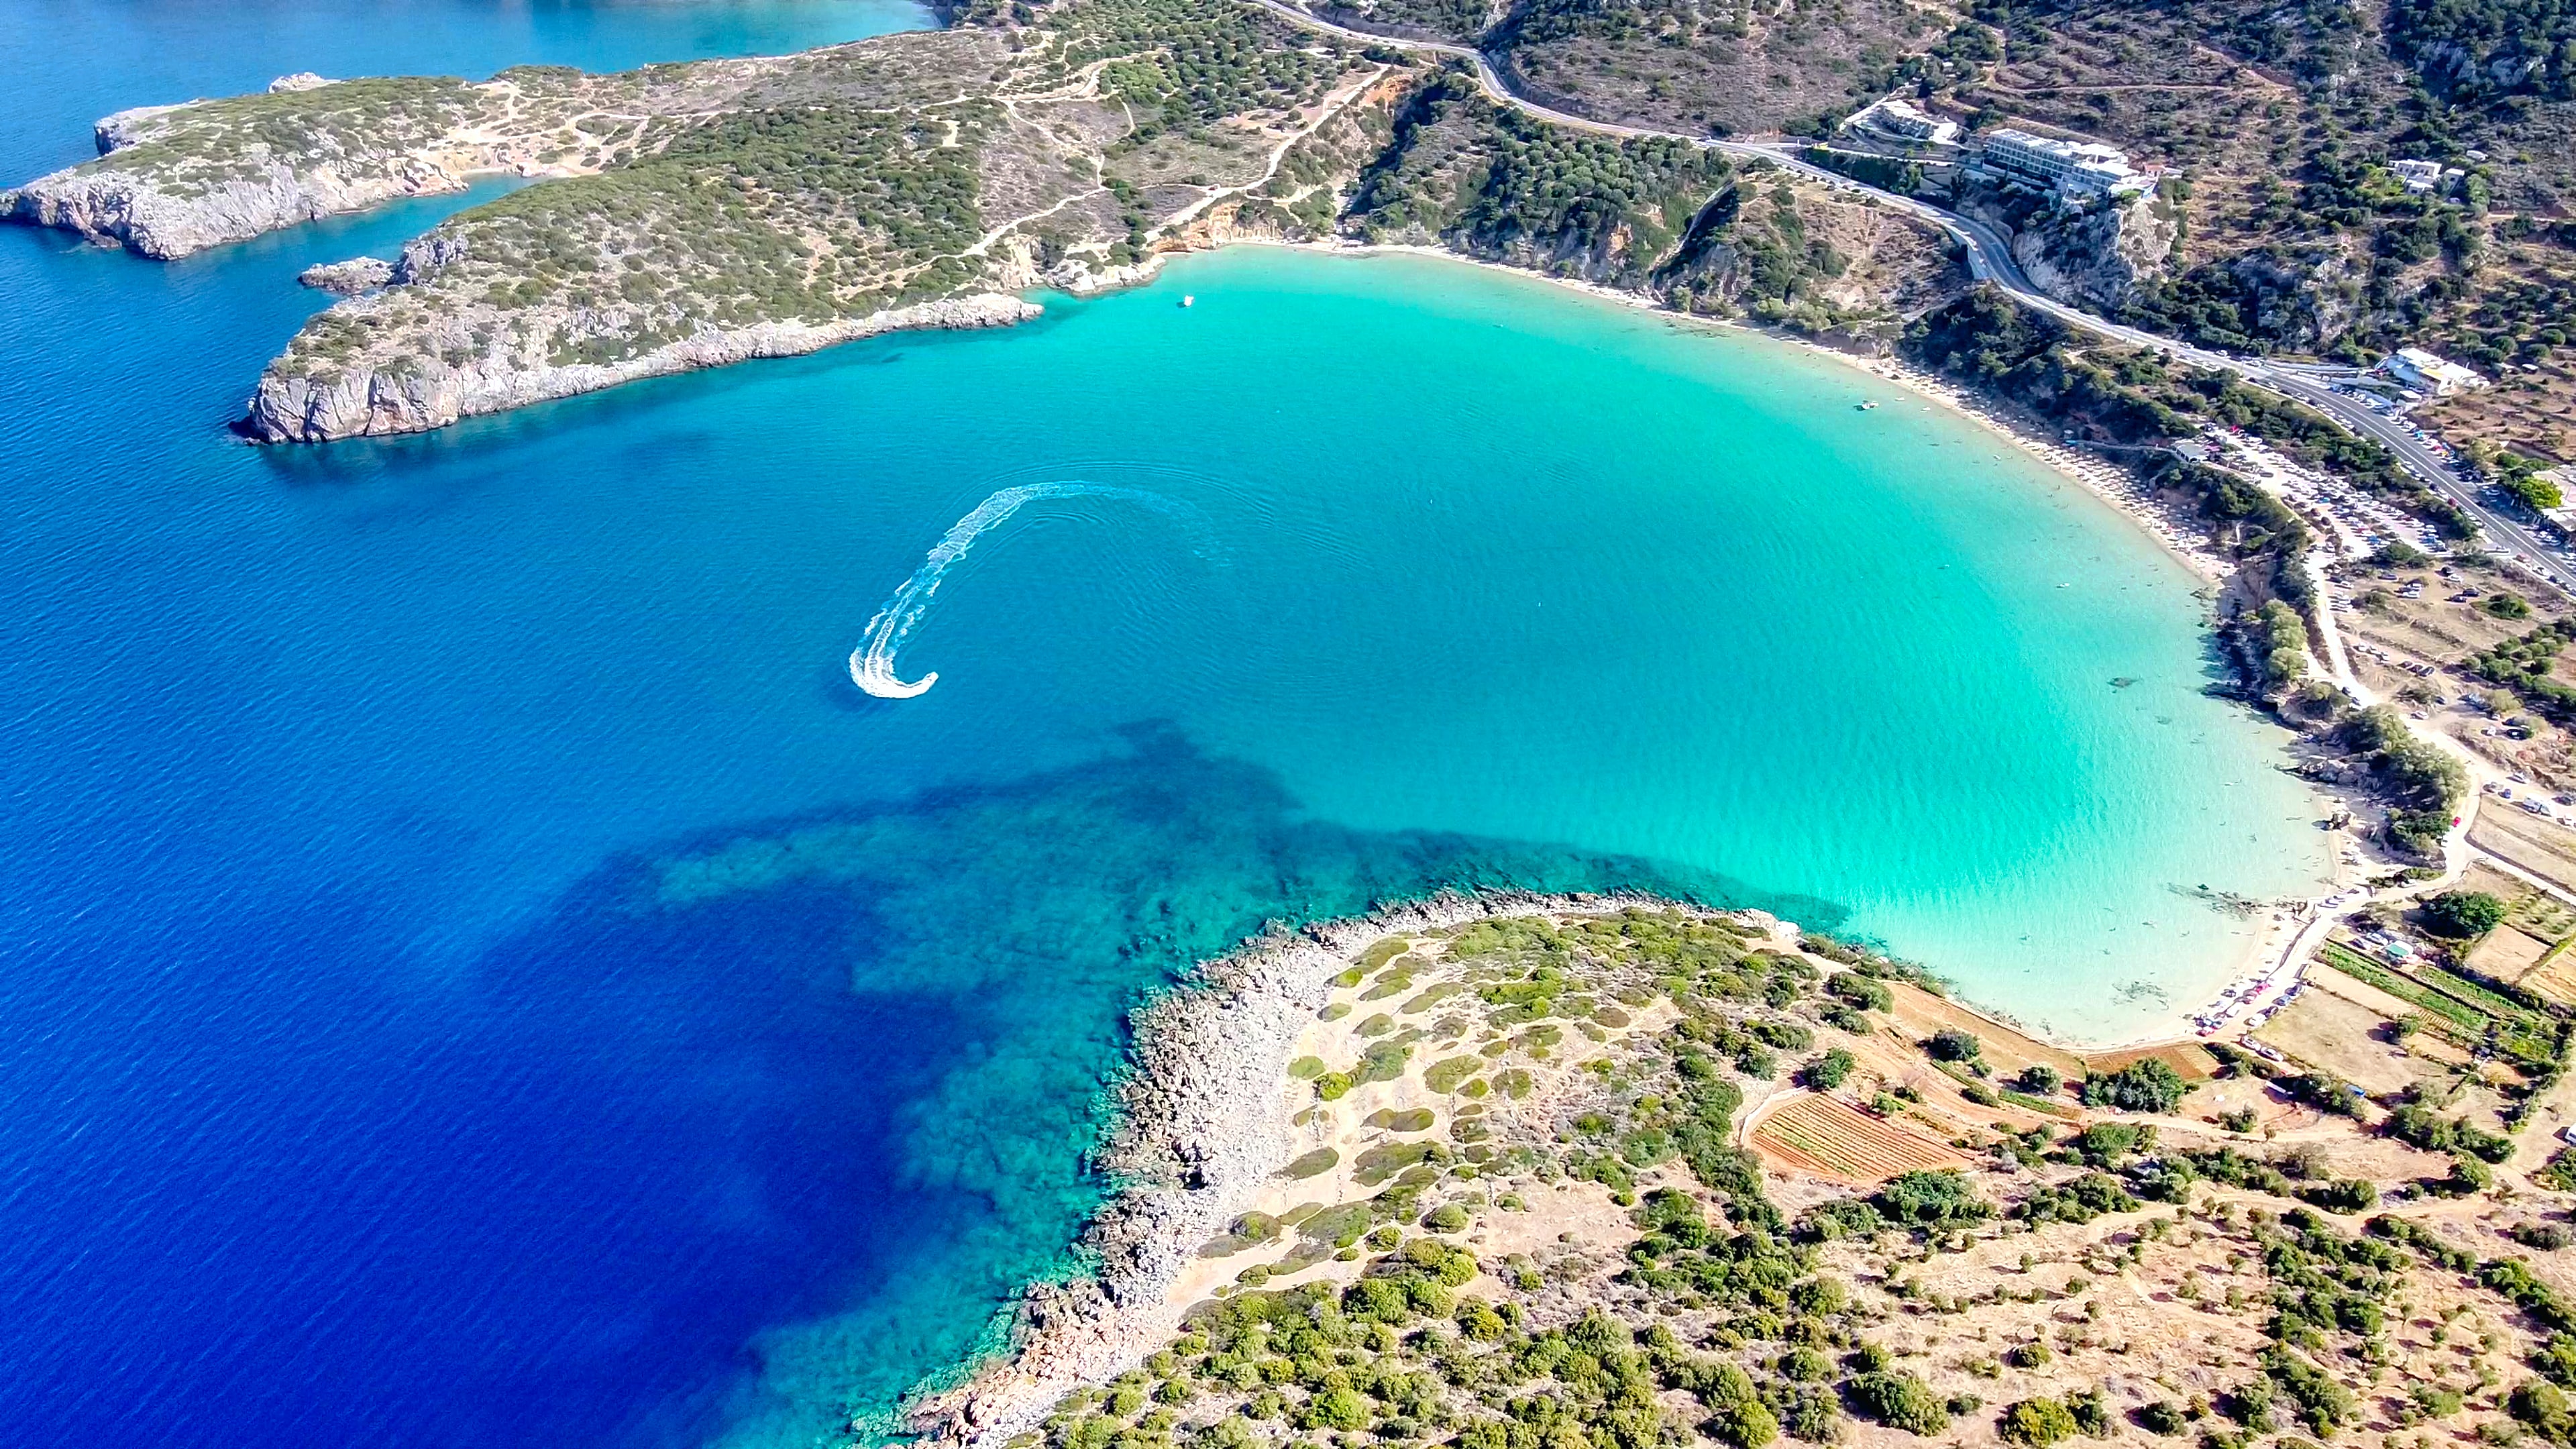 Bucht von Evangelos auf Kreta mit türkisem Meer und weißem Sandstrand